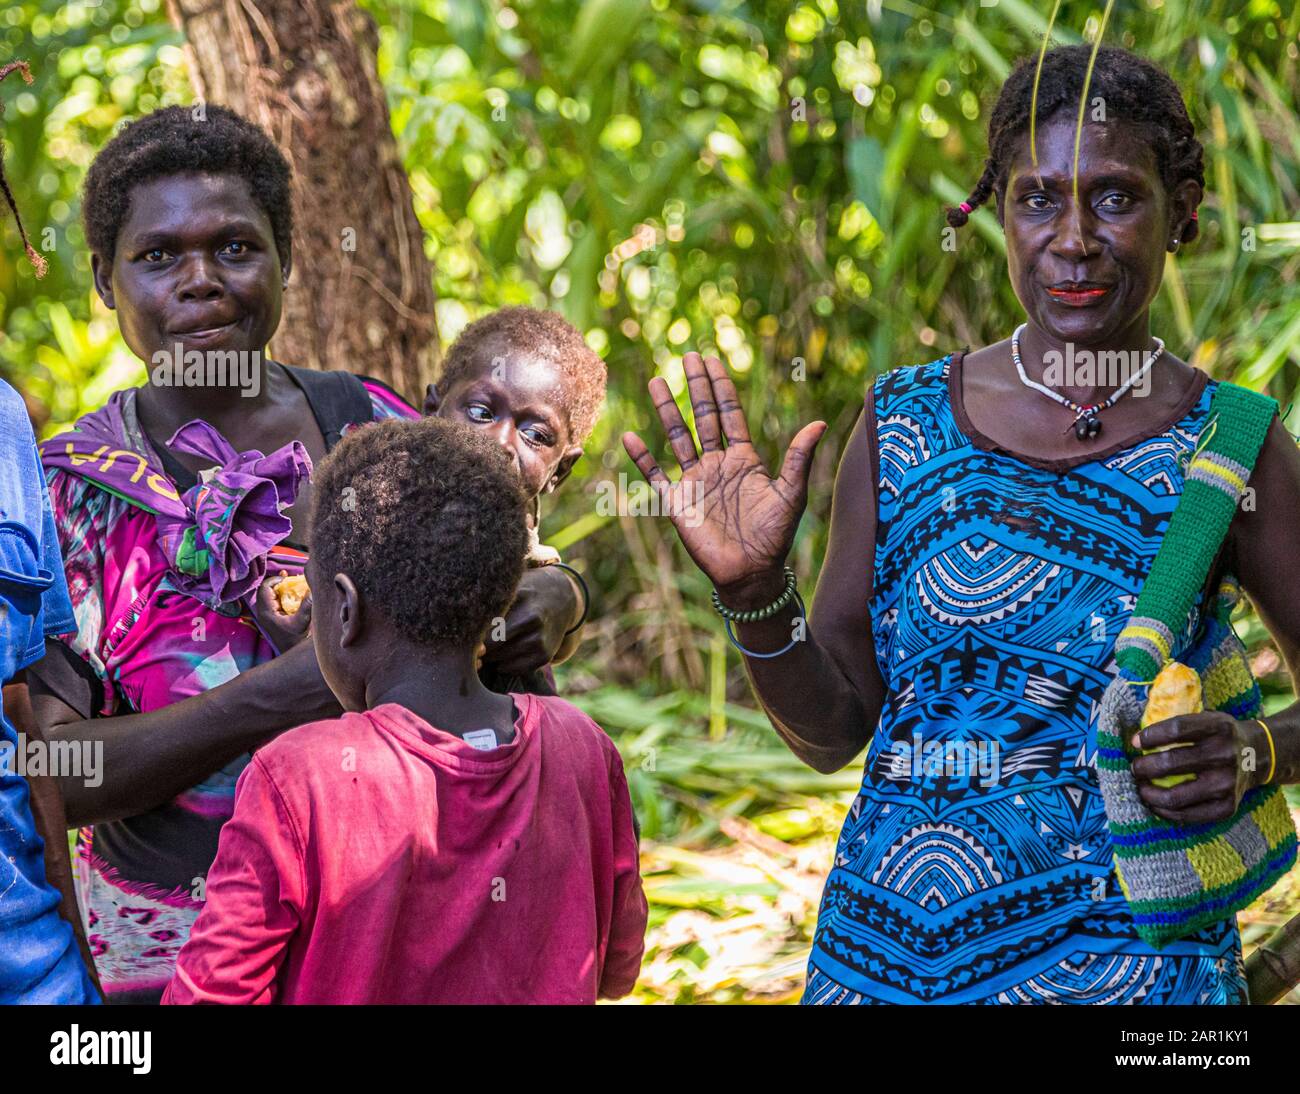 Battesimo dell'isola come benedizione da parte degli indigeni a Bougainville, Papua Nuova Guinea Foto Stock